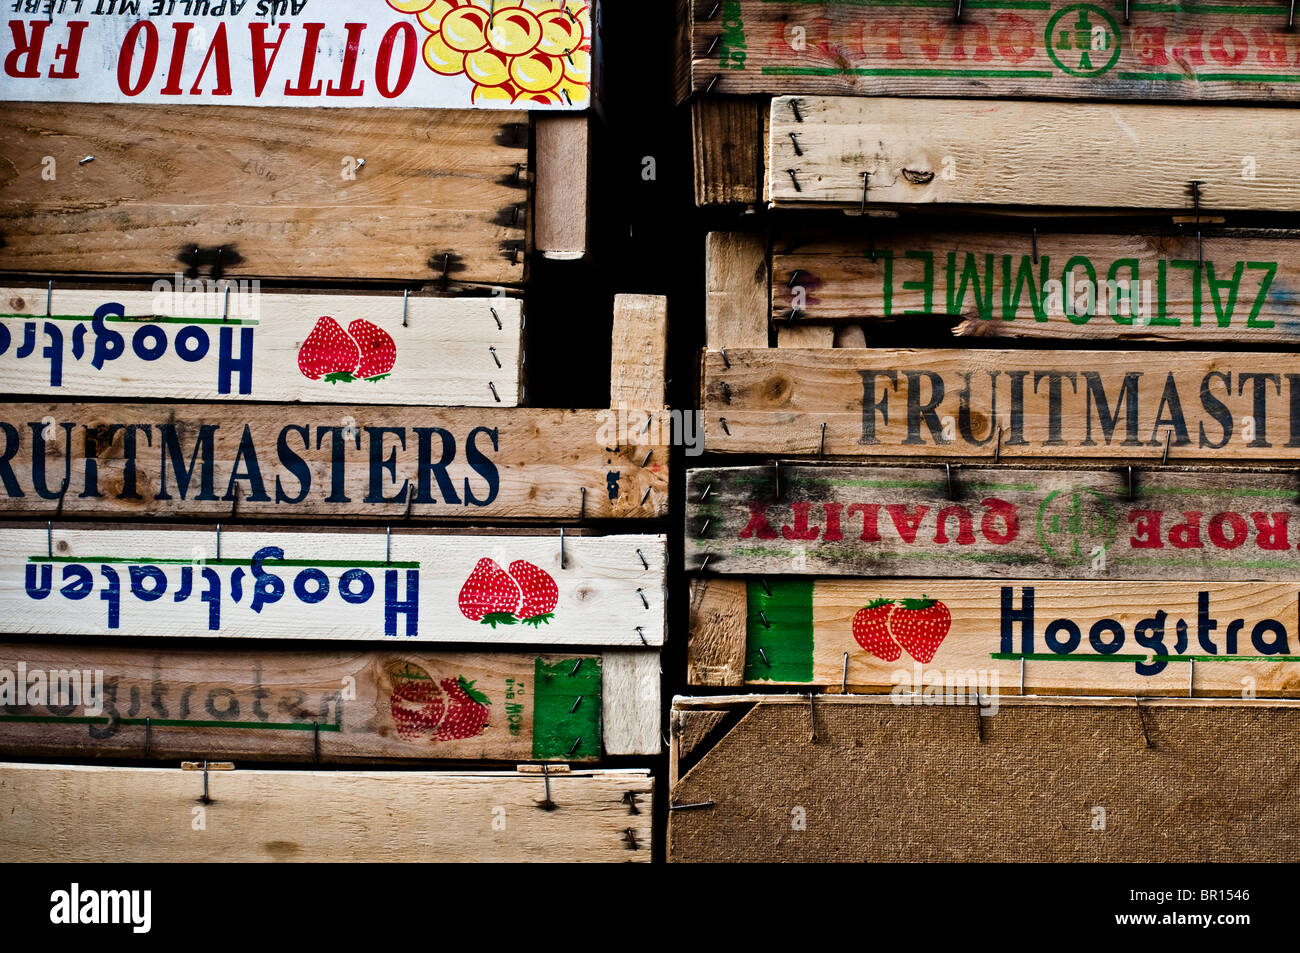 Europäische hölzernen Obst- und Gemüsekisten aus Transport vom Bauernhof zum Ridley Road Market in Dalston, London verwendet. Stockfoto